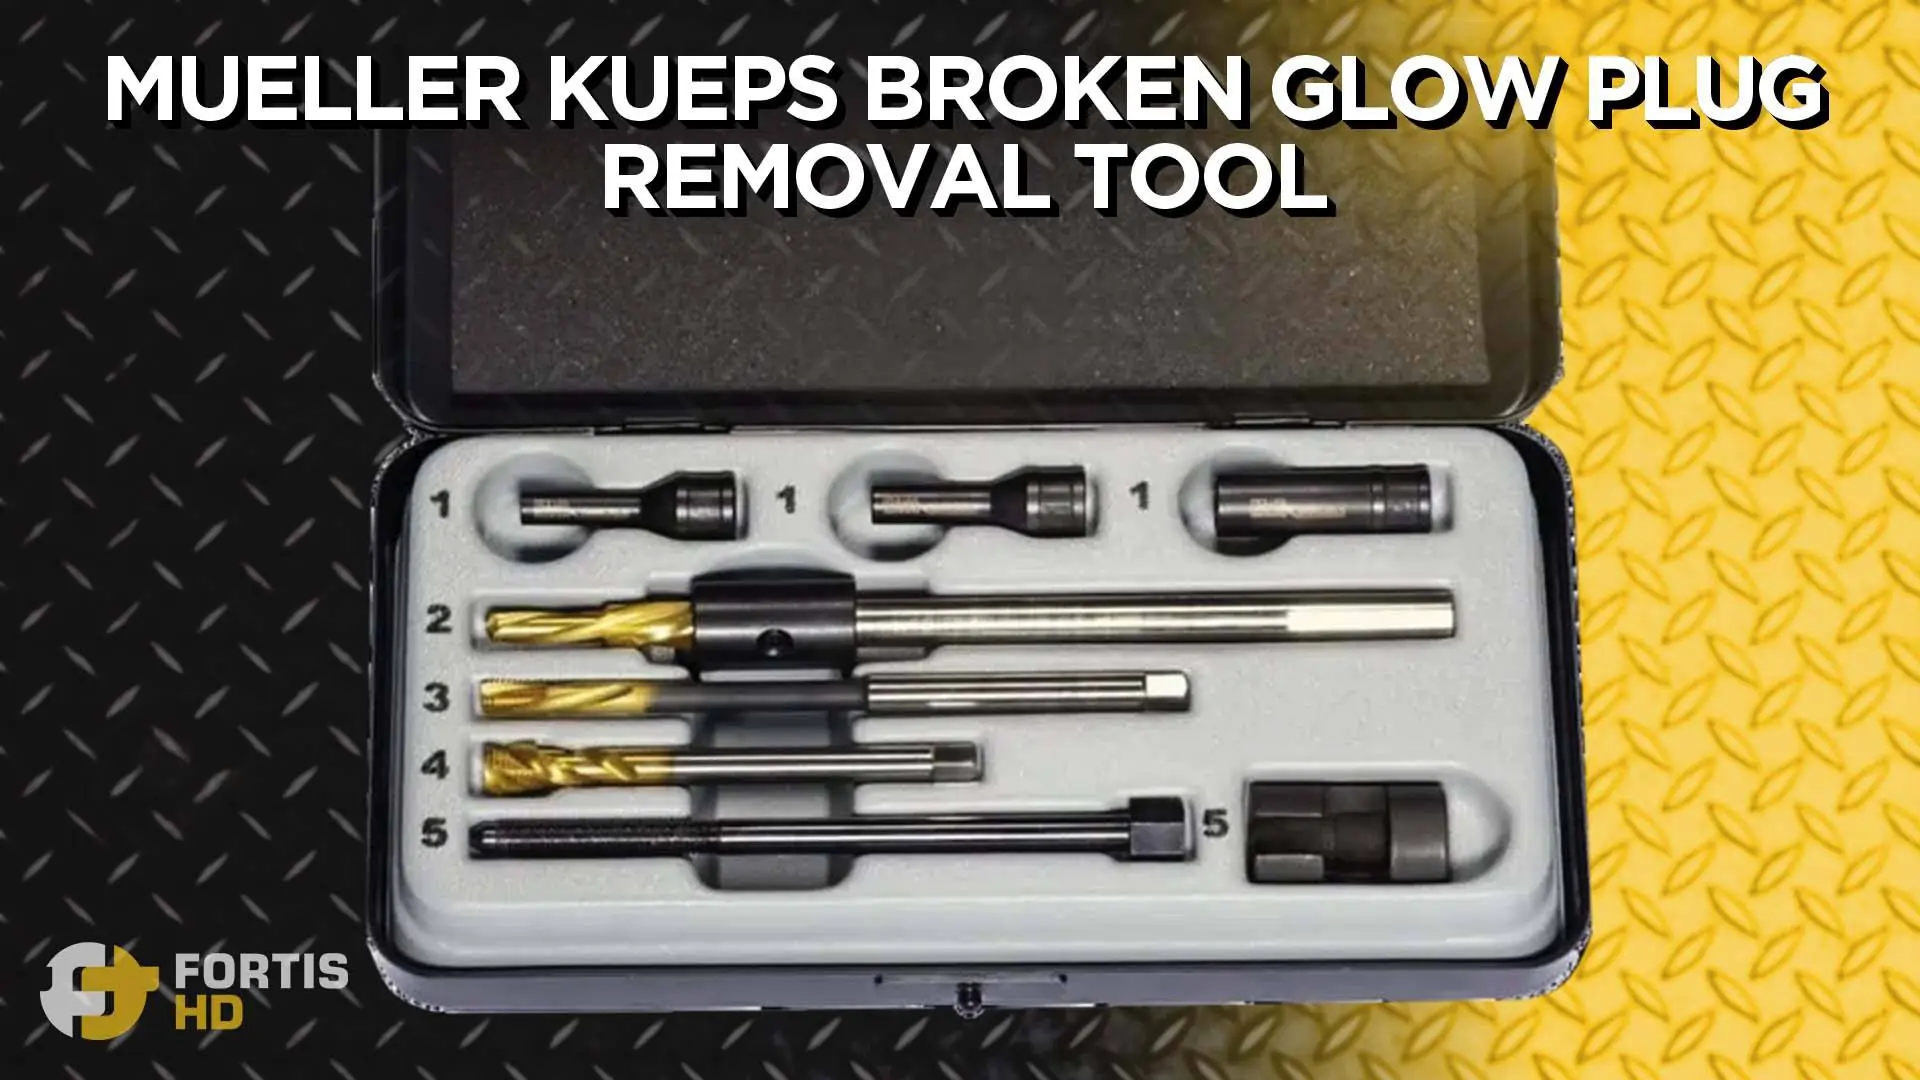 The Mueller Kueps Broken Glow Plug Removal Tool.